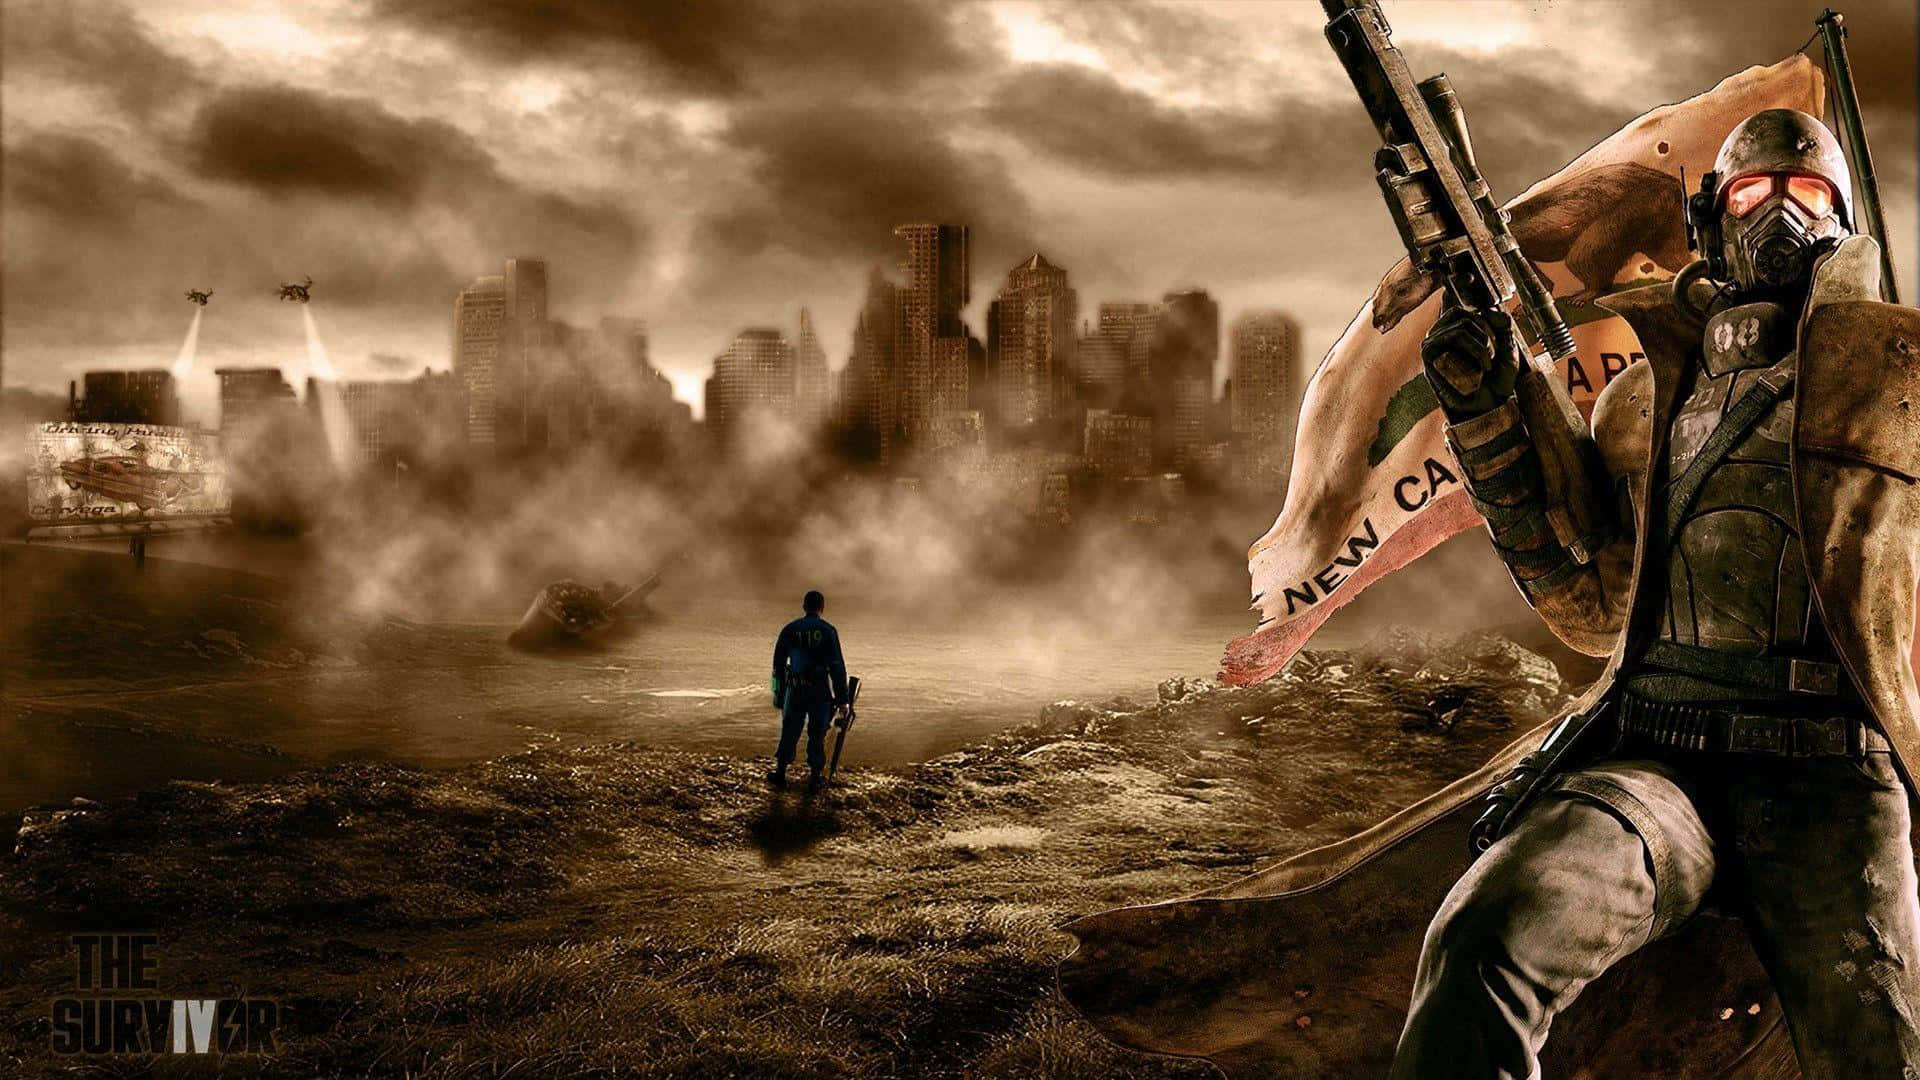 Velkommen til Fallout 4 verdenen med denne fantastiske tapet. Wallpaper